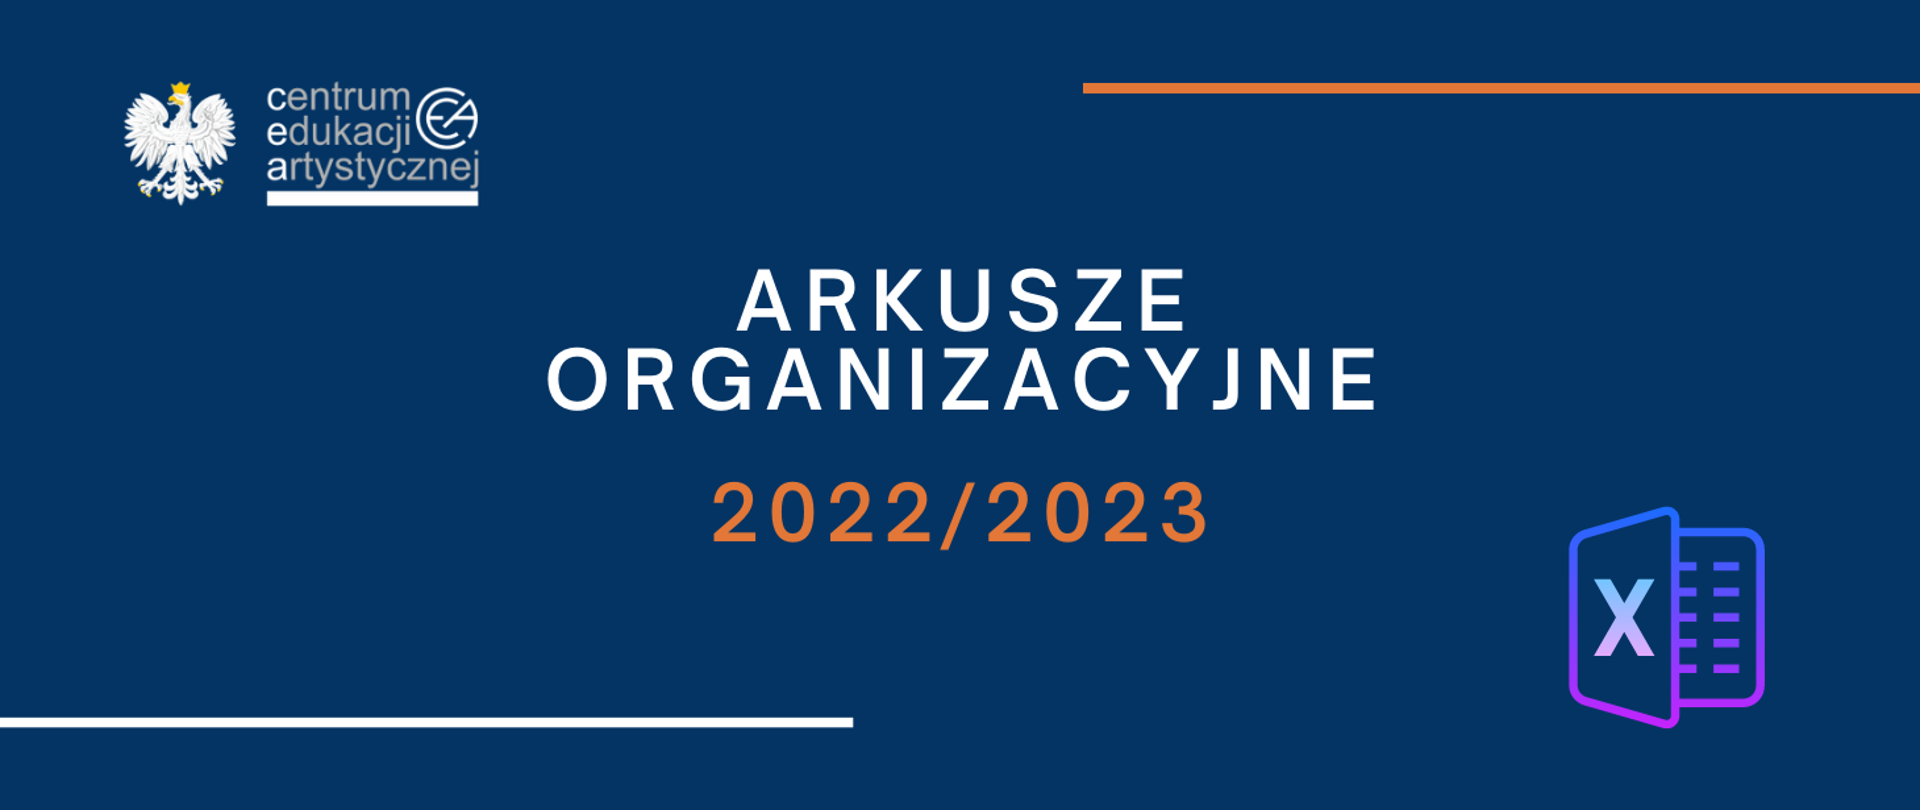 Niebieska grafika z logo CEA w lewym górnym rogu ikoną excel w prawym dolnym rogu i tekstem "Arkusze organizacyjne 2022/2023"